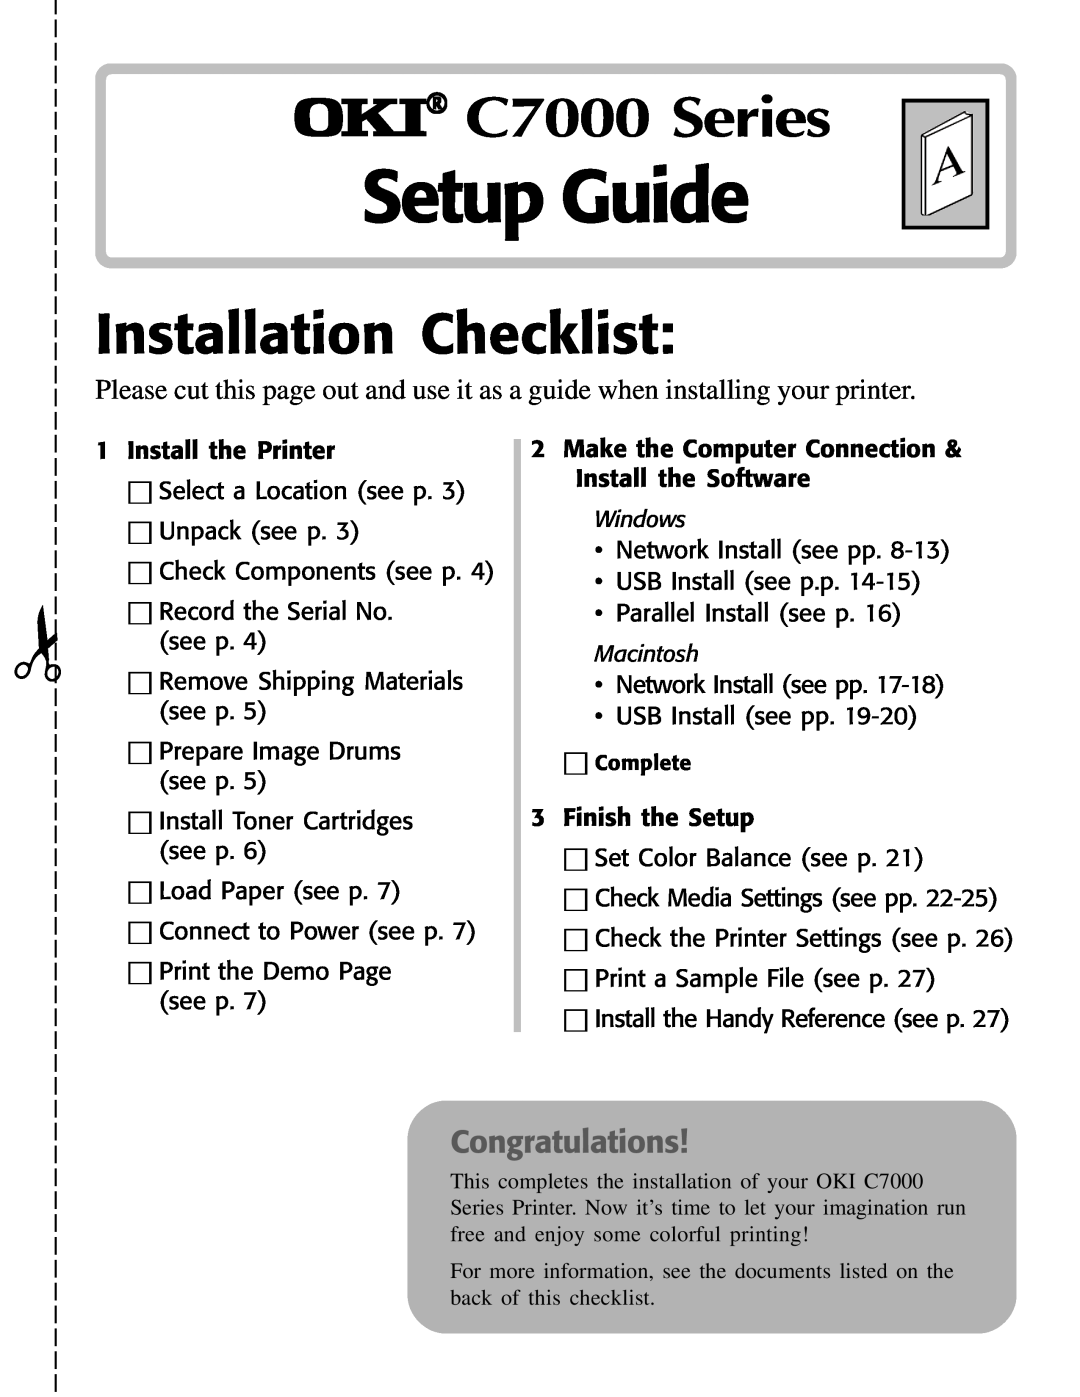 Oki setup guide Setup Guide, OKI C7000 Series, Installation Checklist, Congratulations 